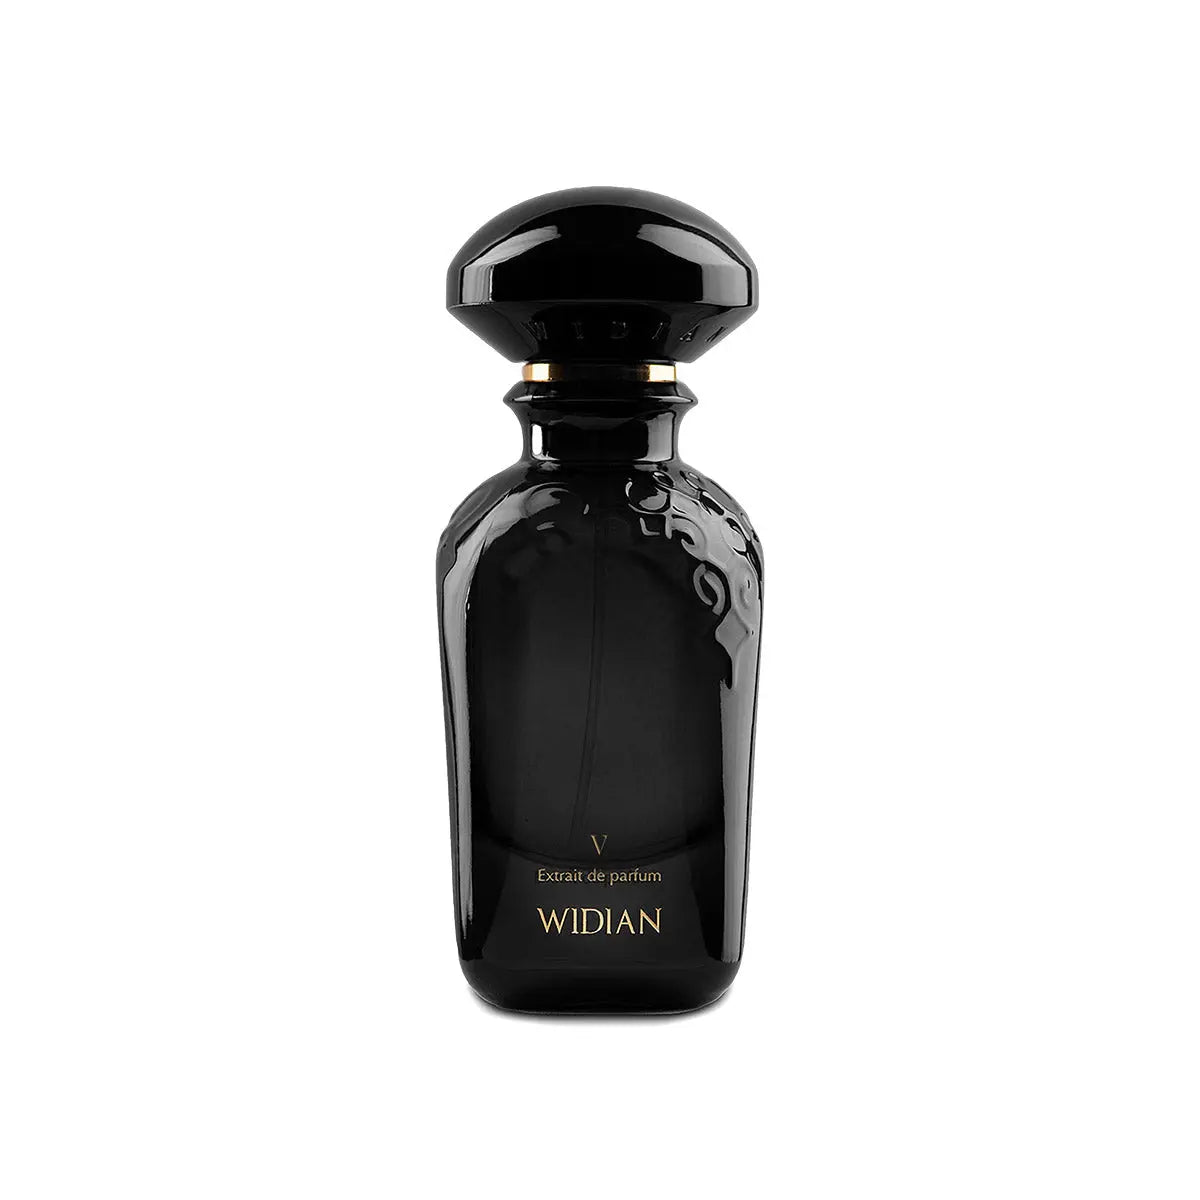 Extrait de V Widian Noir - 50 ml